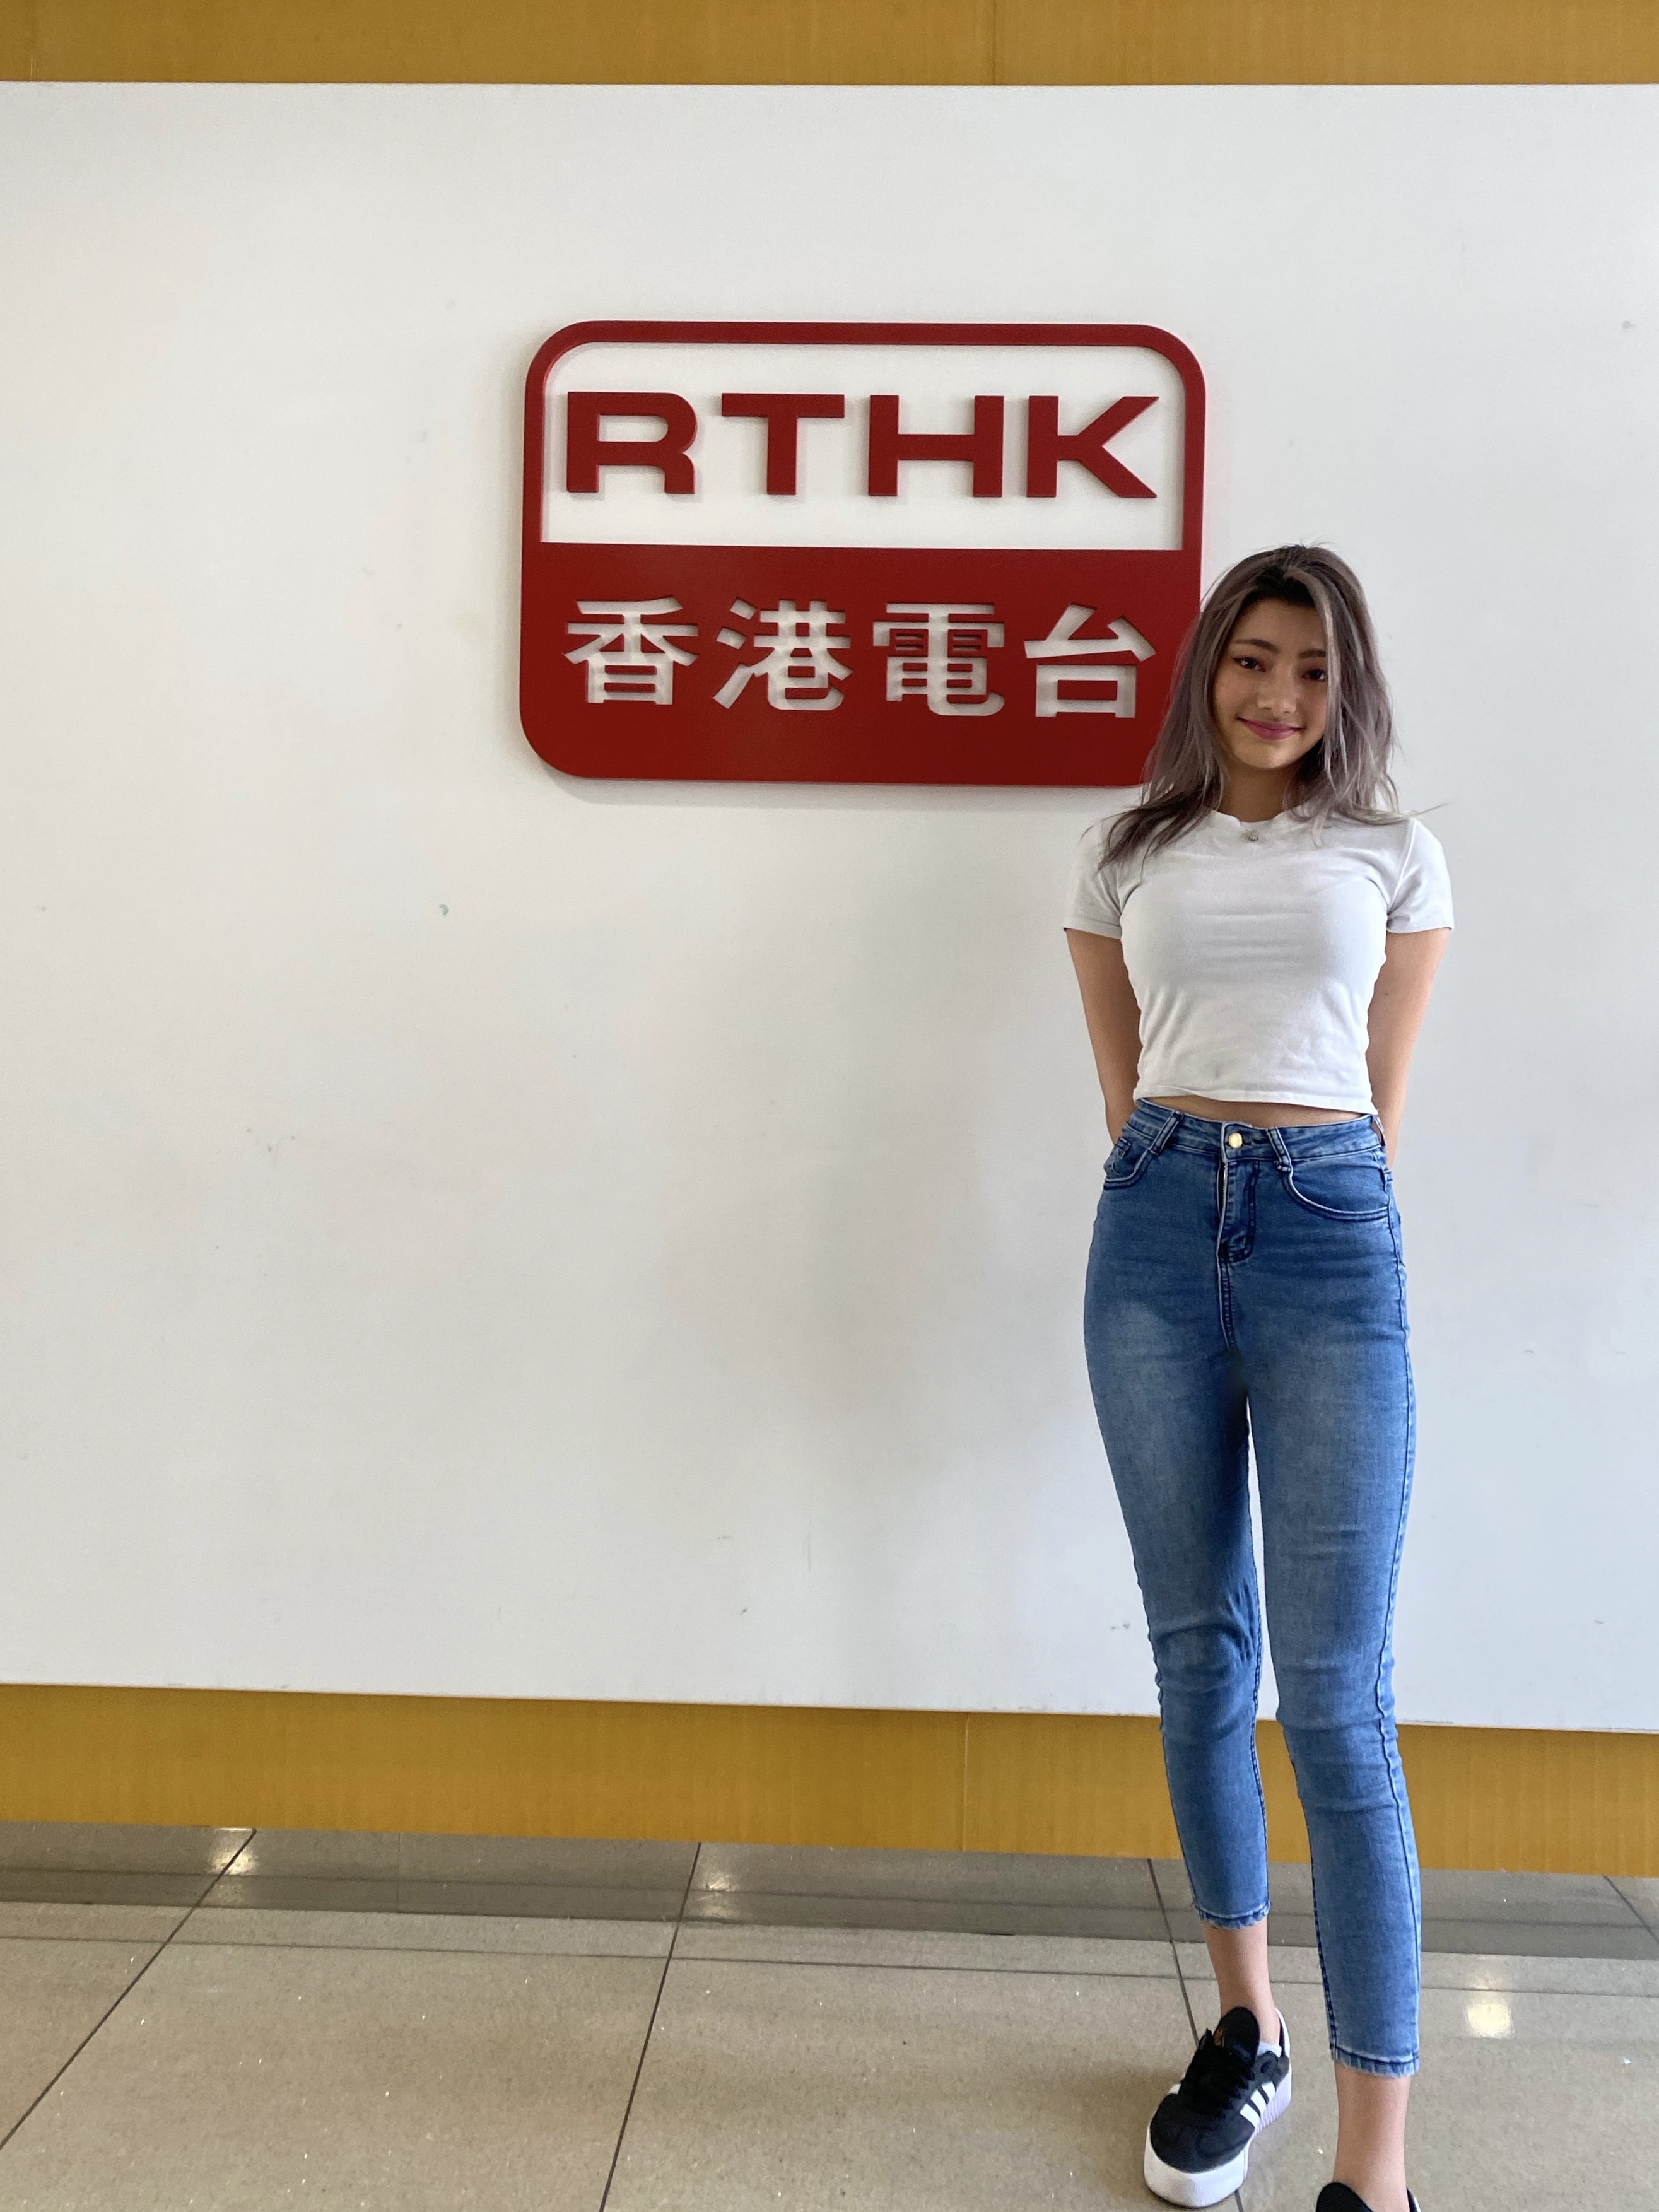 網紅KOLIka 艾卡之媒體報導: 香港電台第五台 -夏而